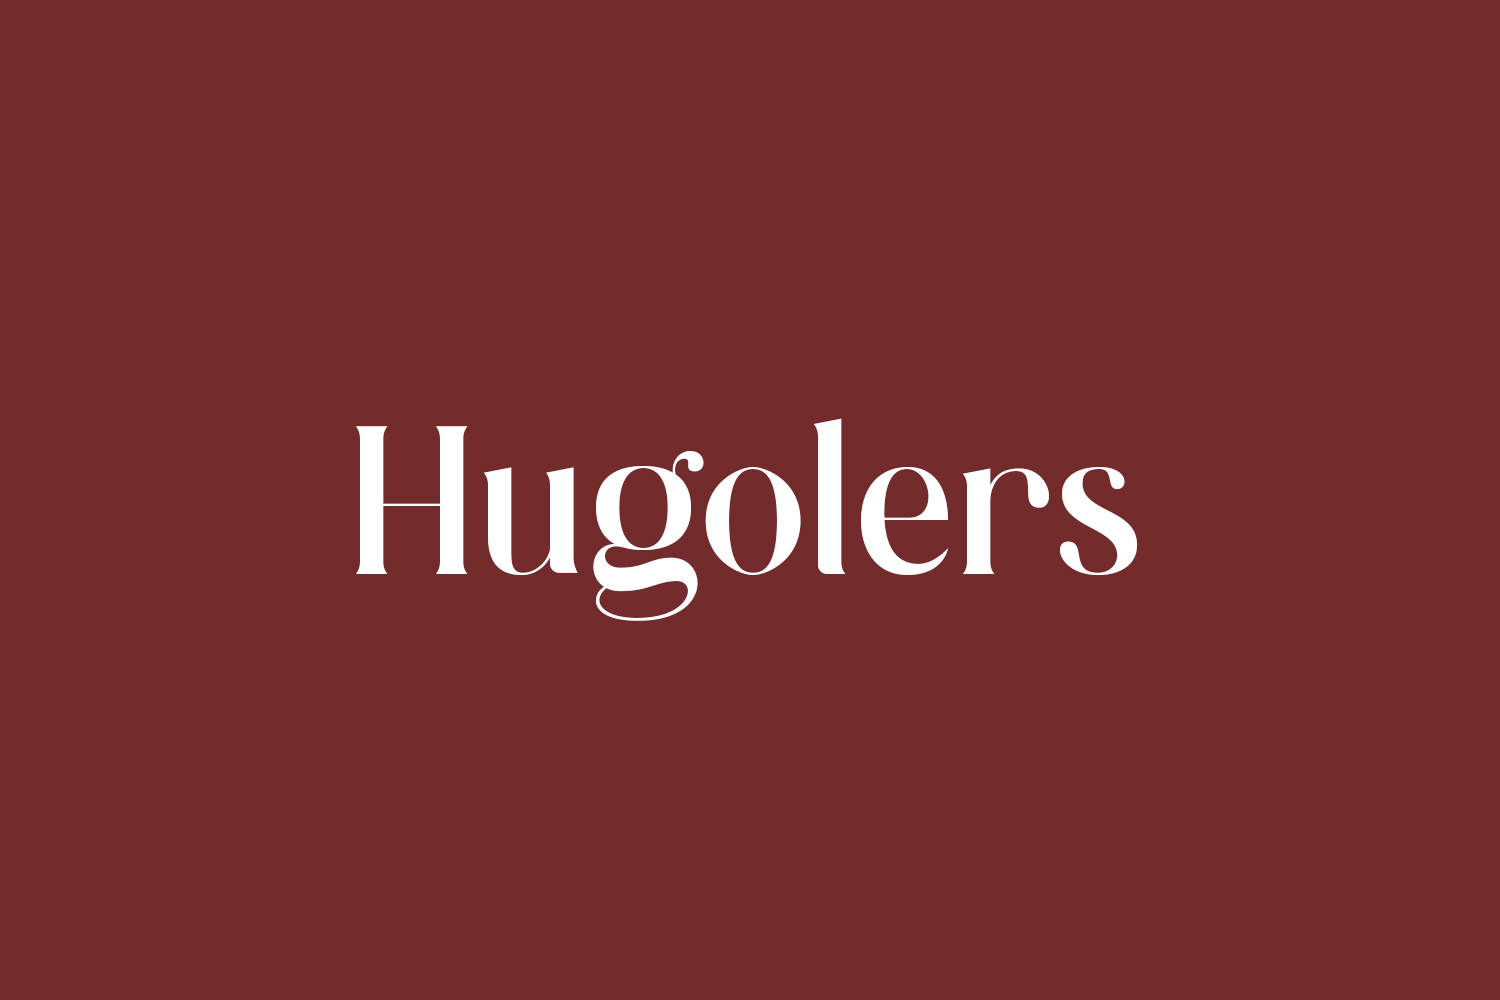 Hugolers Free Font